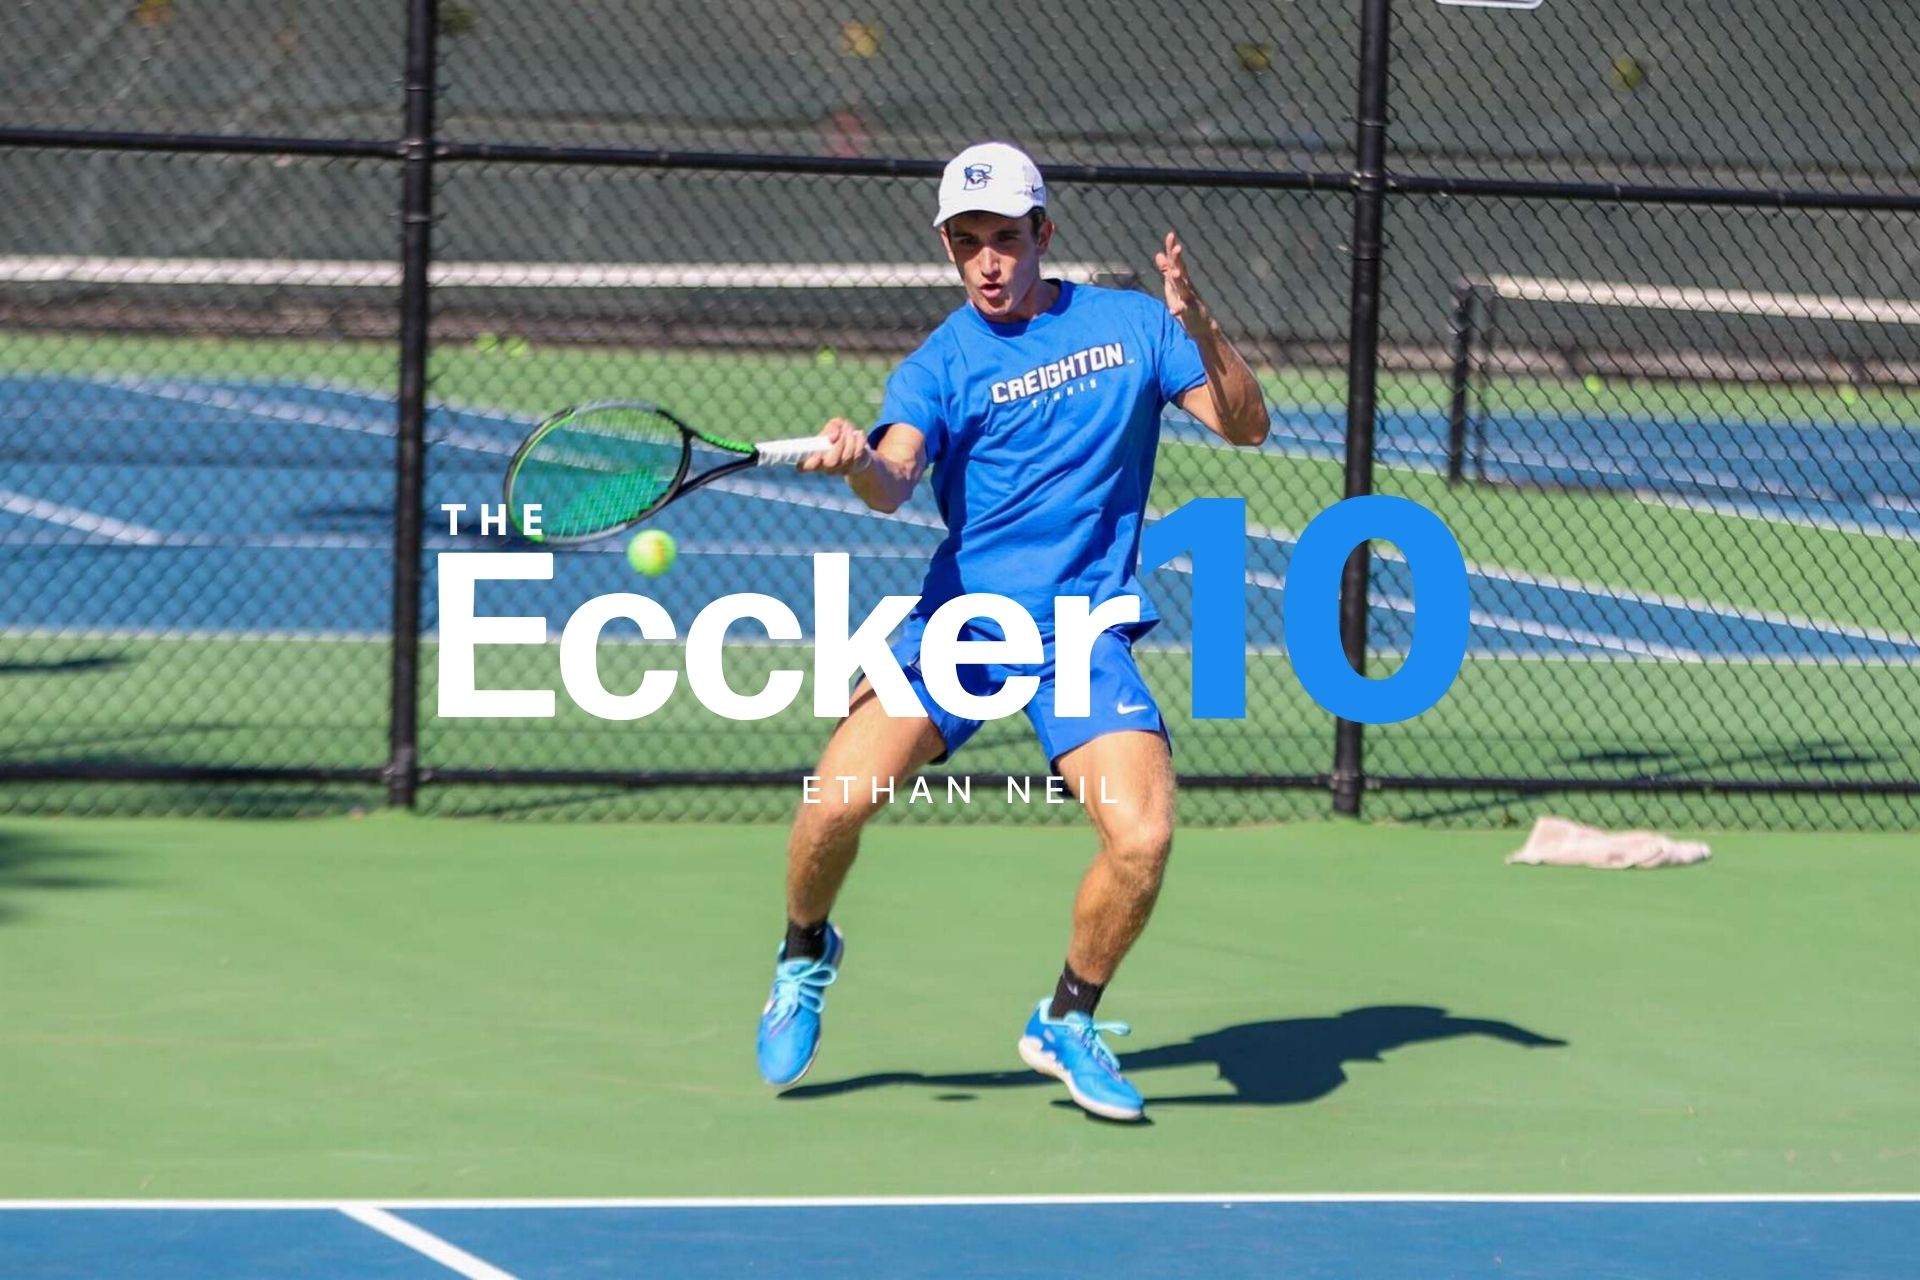 The Eccker 10 - Ethan Neil